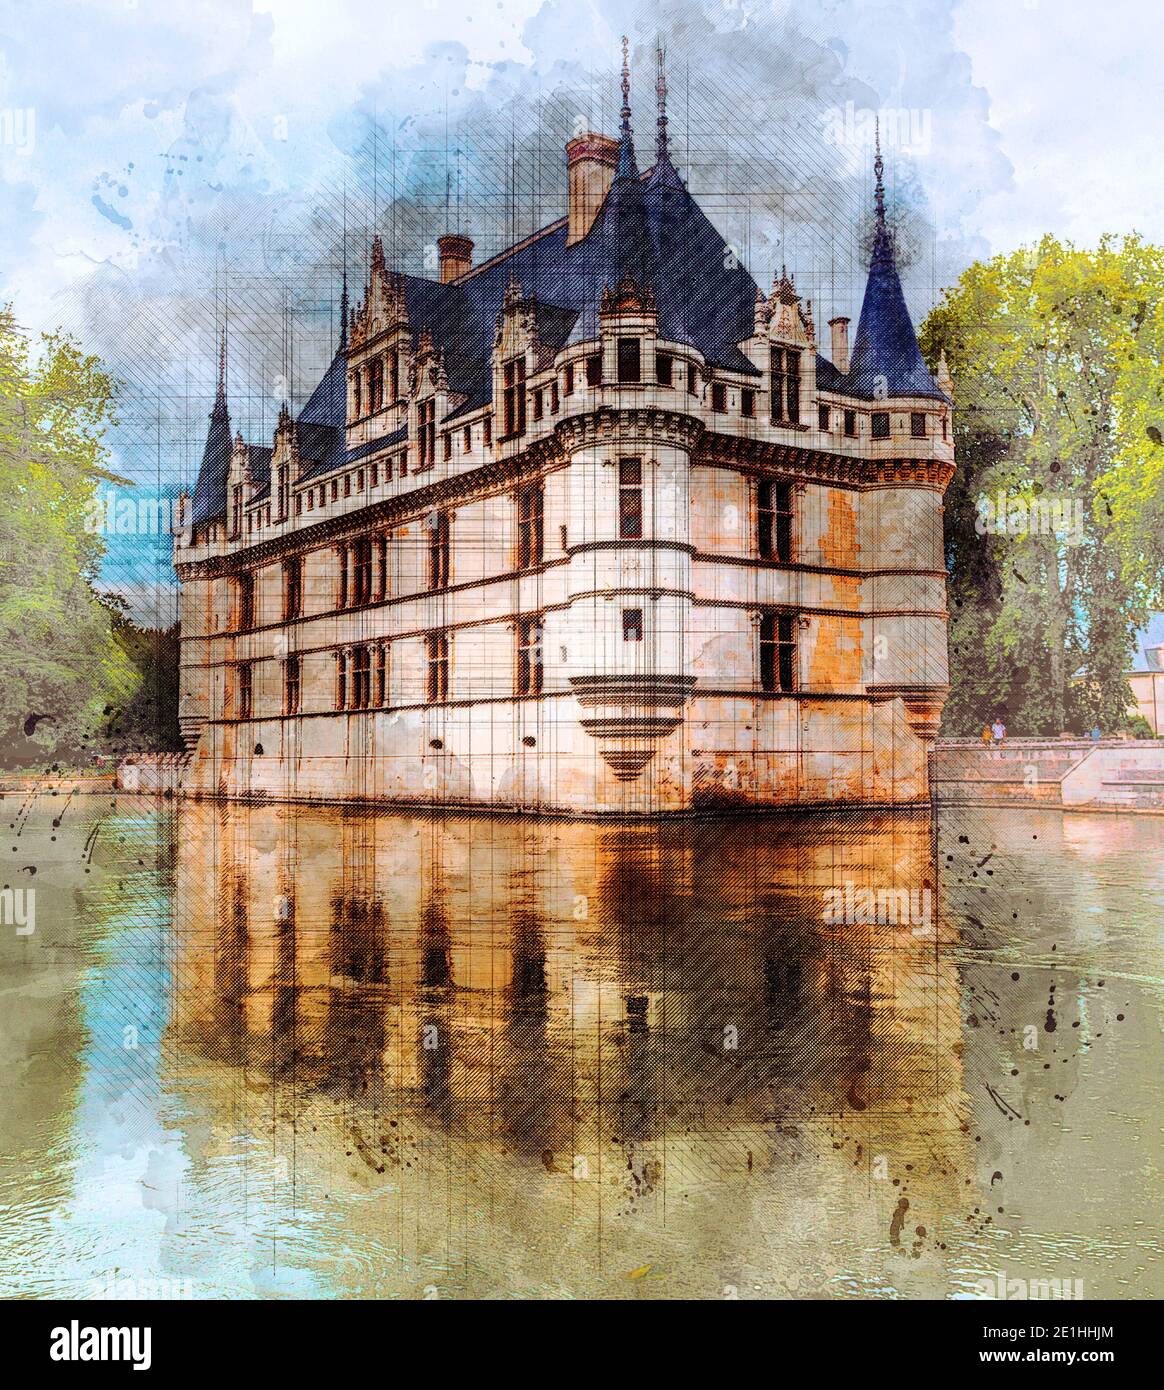 Château médiéval Azay le Rideau, Vallée de la Loire, France. Illustration de l'esquisse au crayon de couleur. Banque D'Images